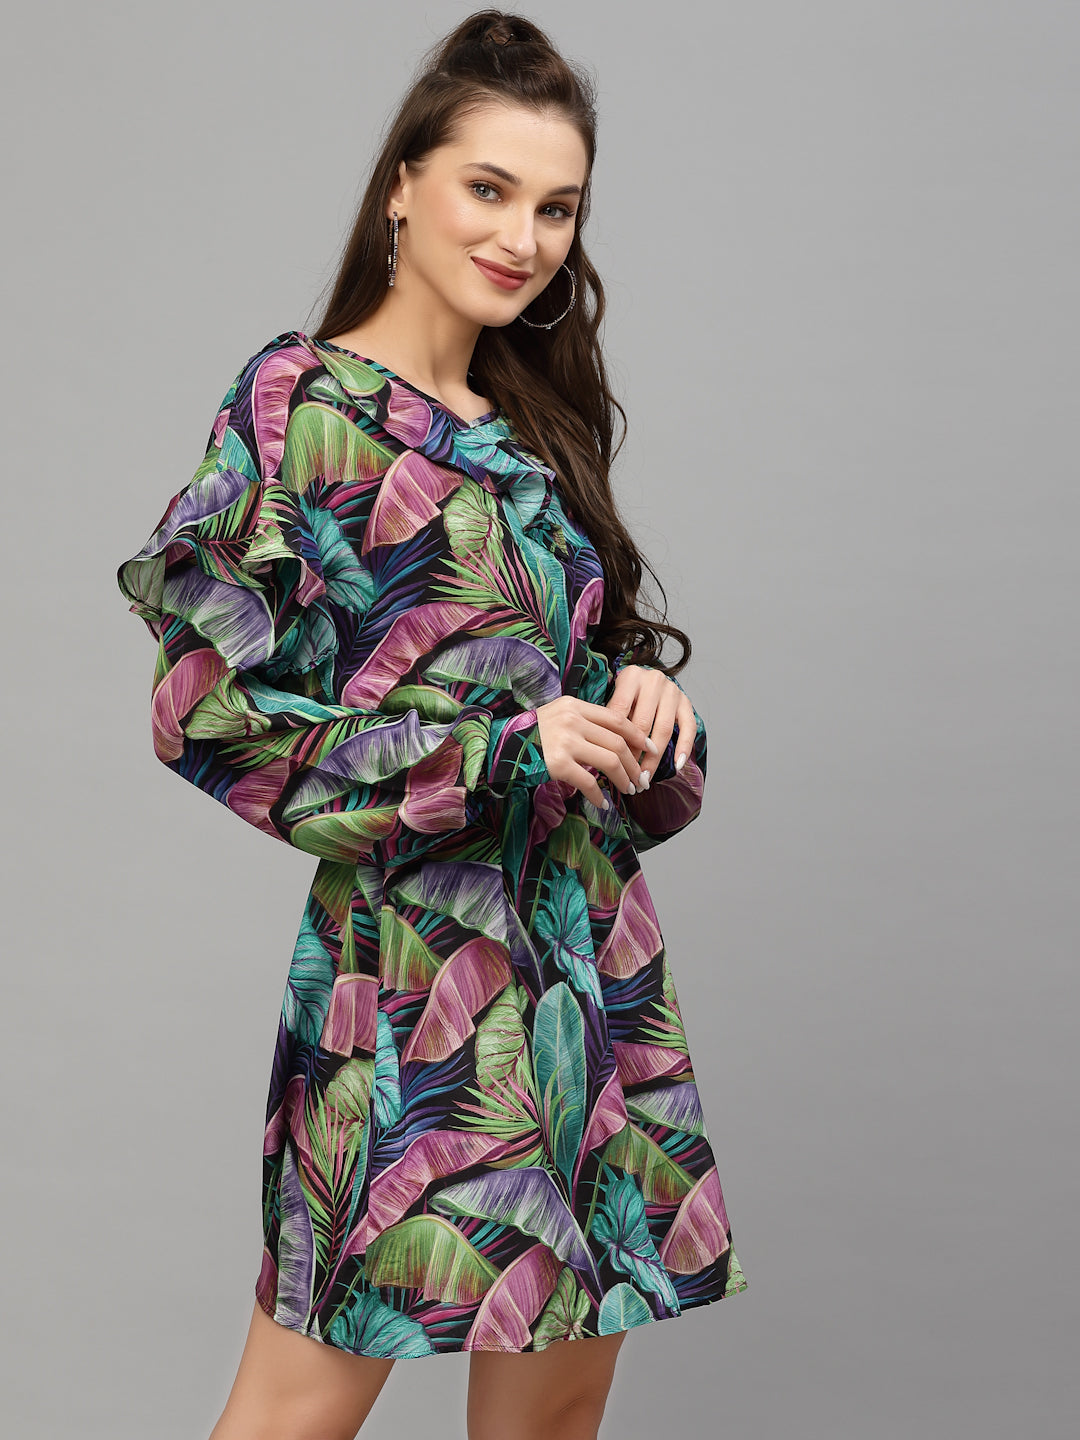 Valbone Women's Western Wear Multi-color Leaves Printed Viscose Dress